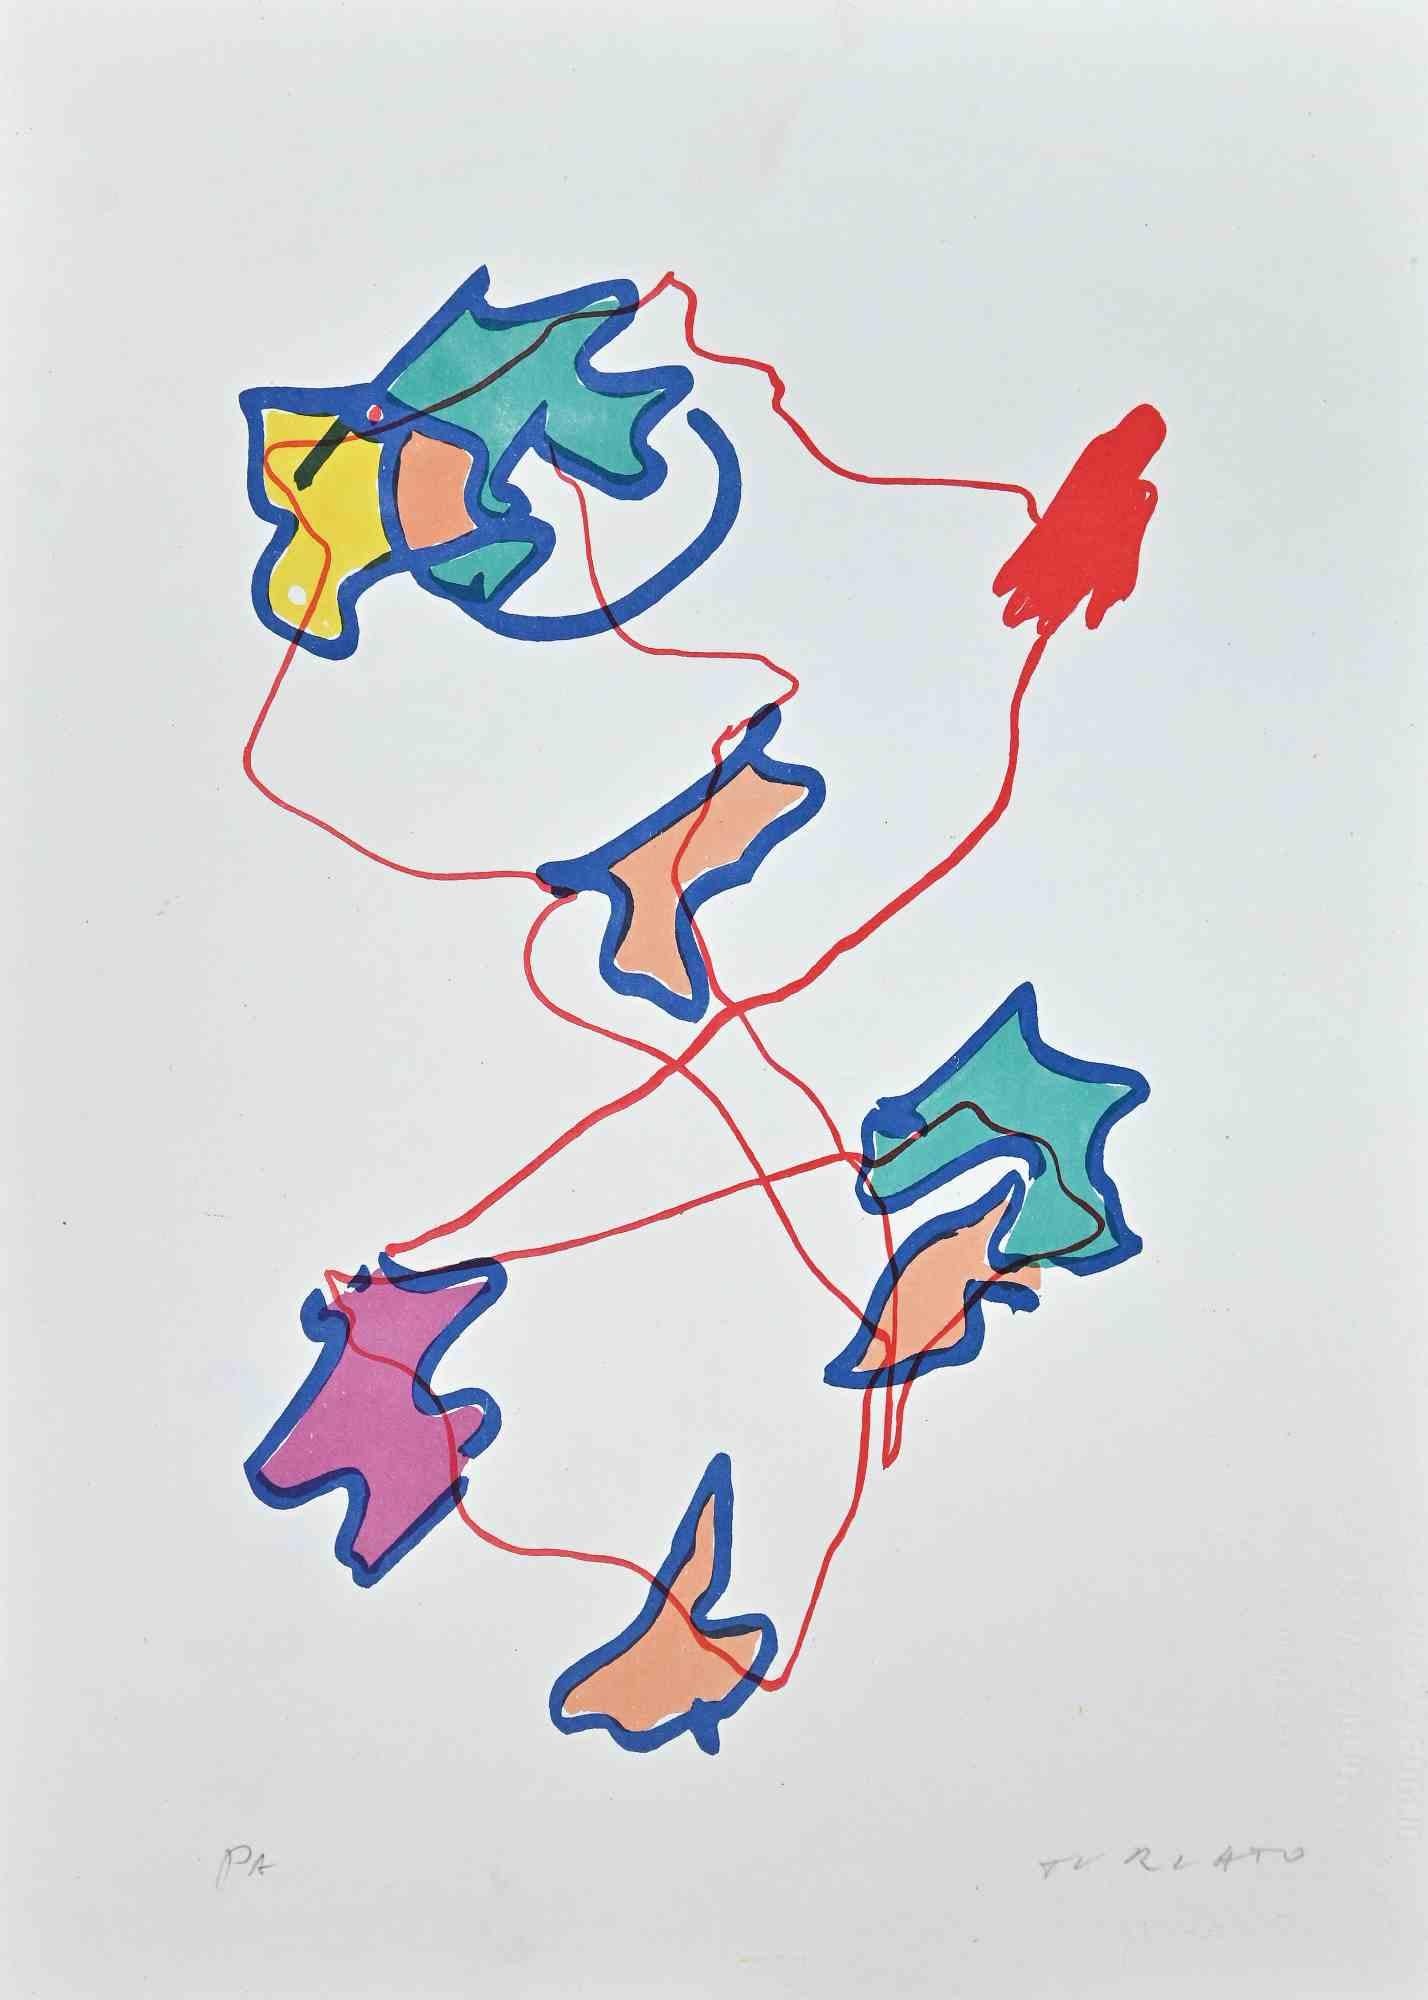 Leaves ist ein farbiger Siebdruck, der von dem zeitgenössischen Künstler Giulio Turcato 1973 realisiert wurde.

Handsigniert mit Bleistift unten rechts.

Artist's Proof.

Echtheitsetikett von La Nuova Foglio auf der Rückseite. 

Gute